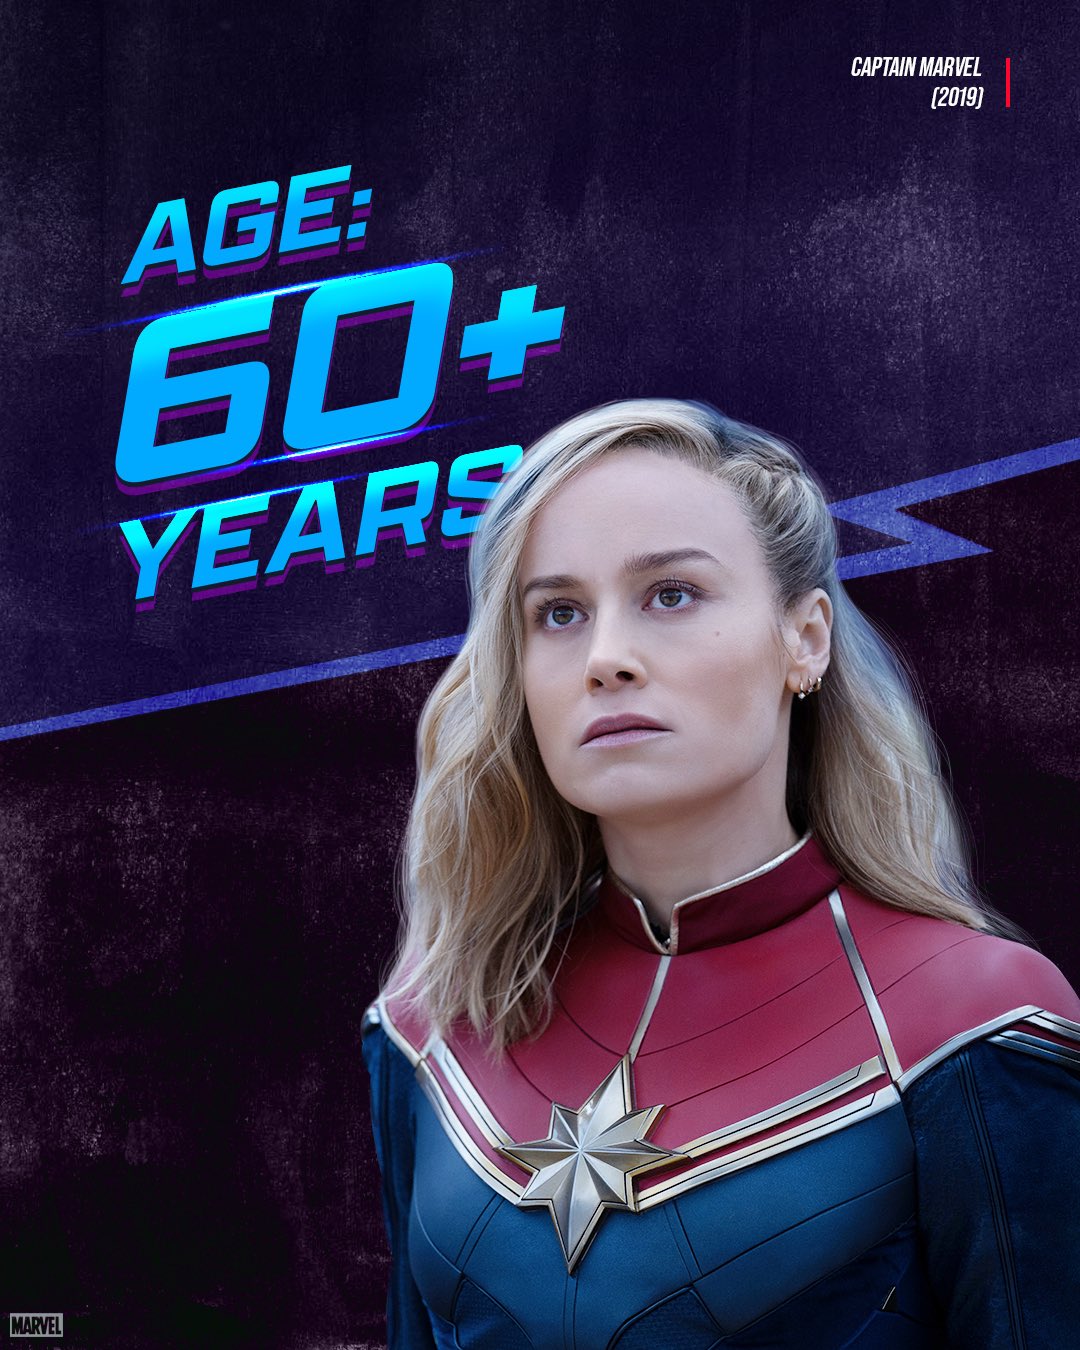 Marvel подтвердили неожиданный возраст Капитана Марвел